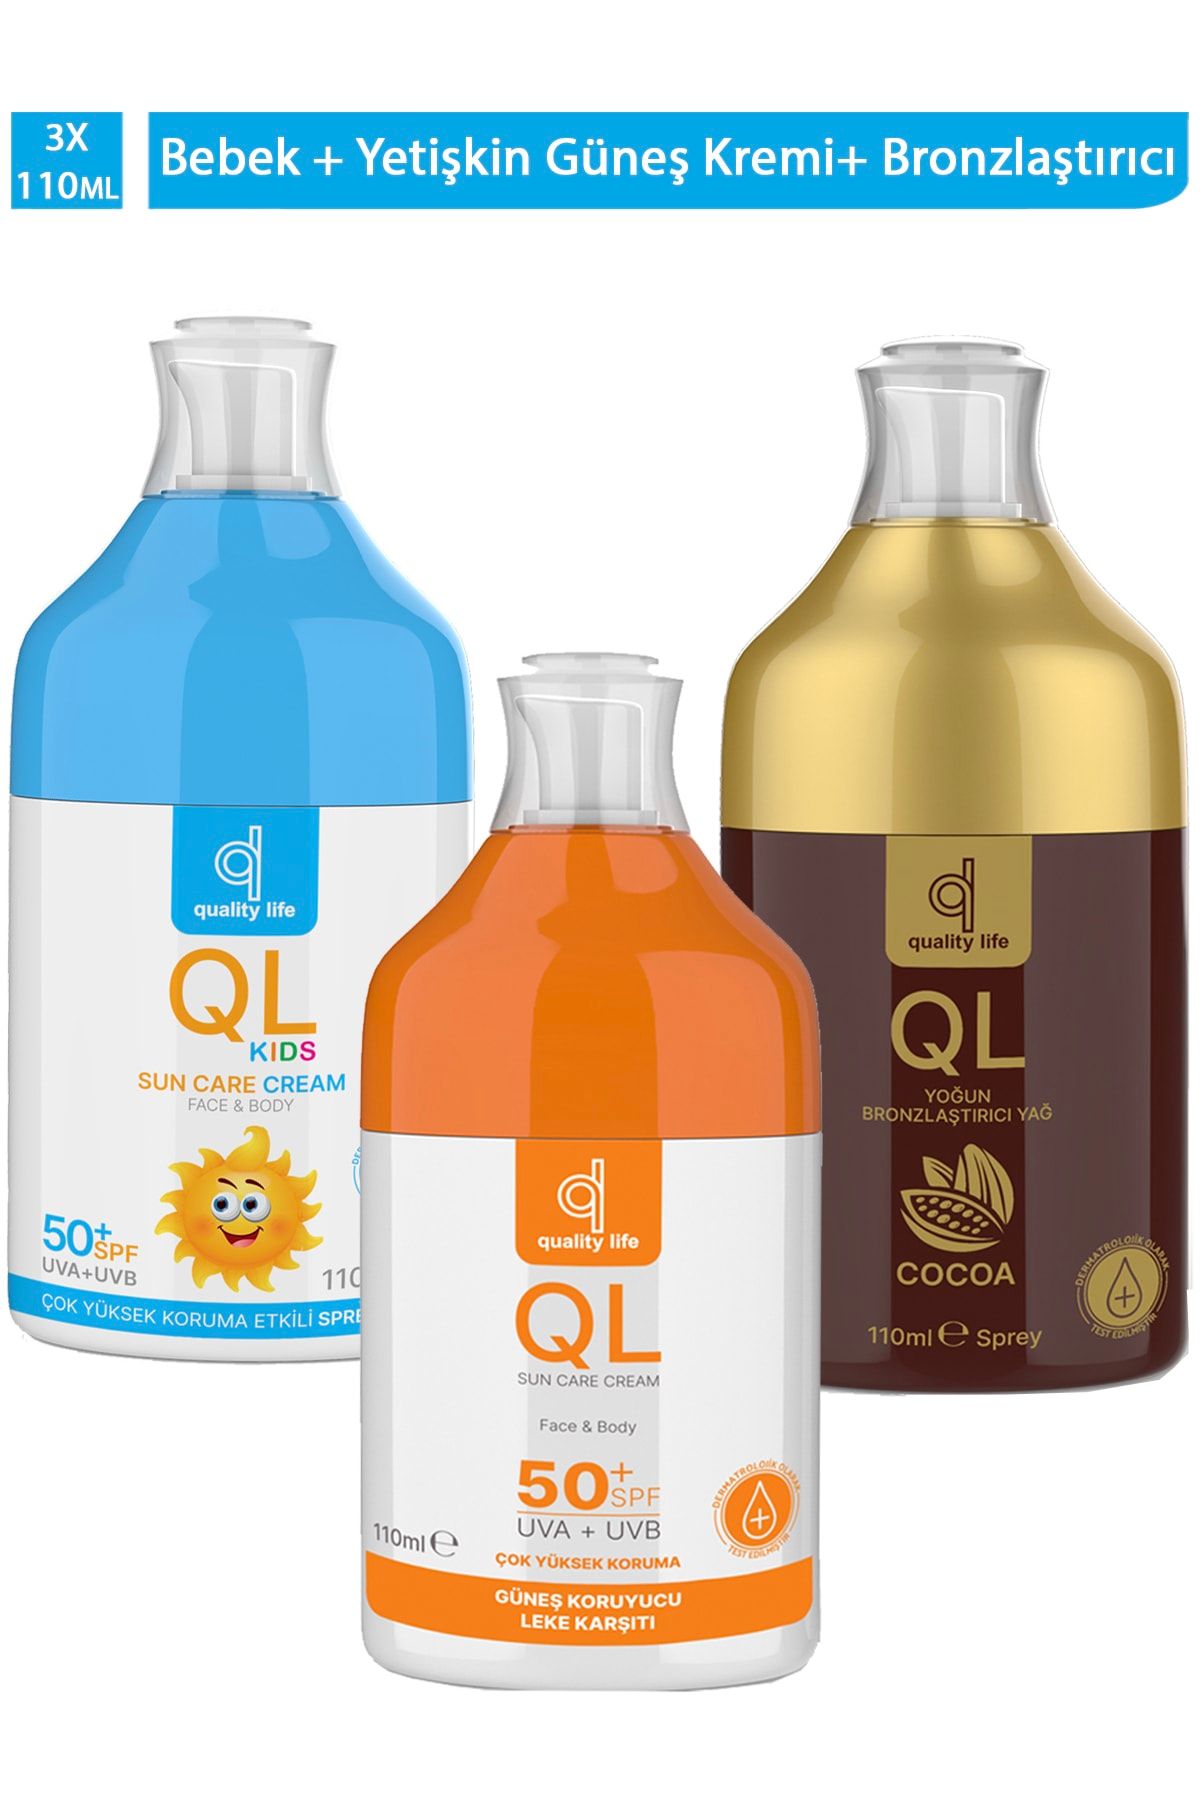 Quality Life Ql 50 Faktör Güneş Kremi Seti ( Güneş Kremi , Bebek Güneş Kremi, Bronzlaştırıcı Yağ ) 3 Güneş Ürünü